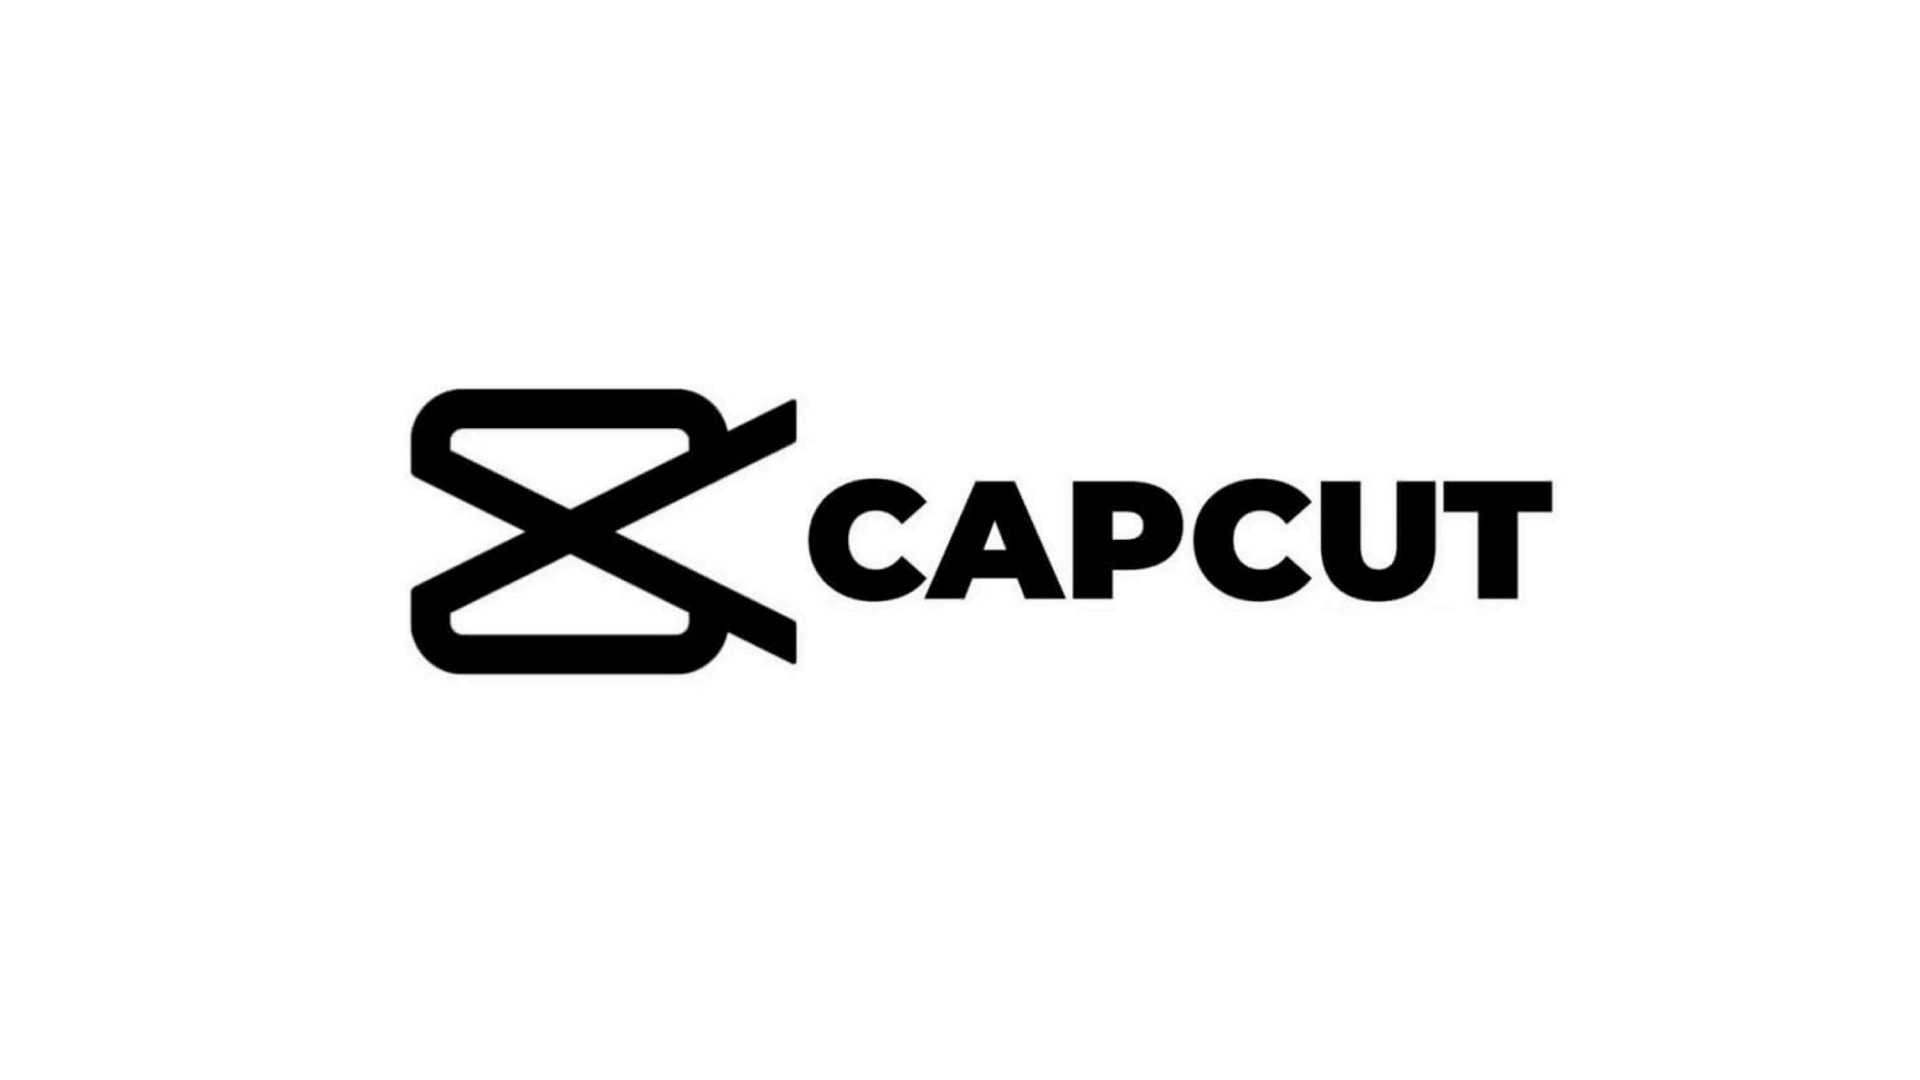 Me capcut. CAPCUT. CAPCUT лого. Значле CAPCUT. Картинки для CAPCUT.